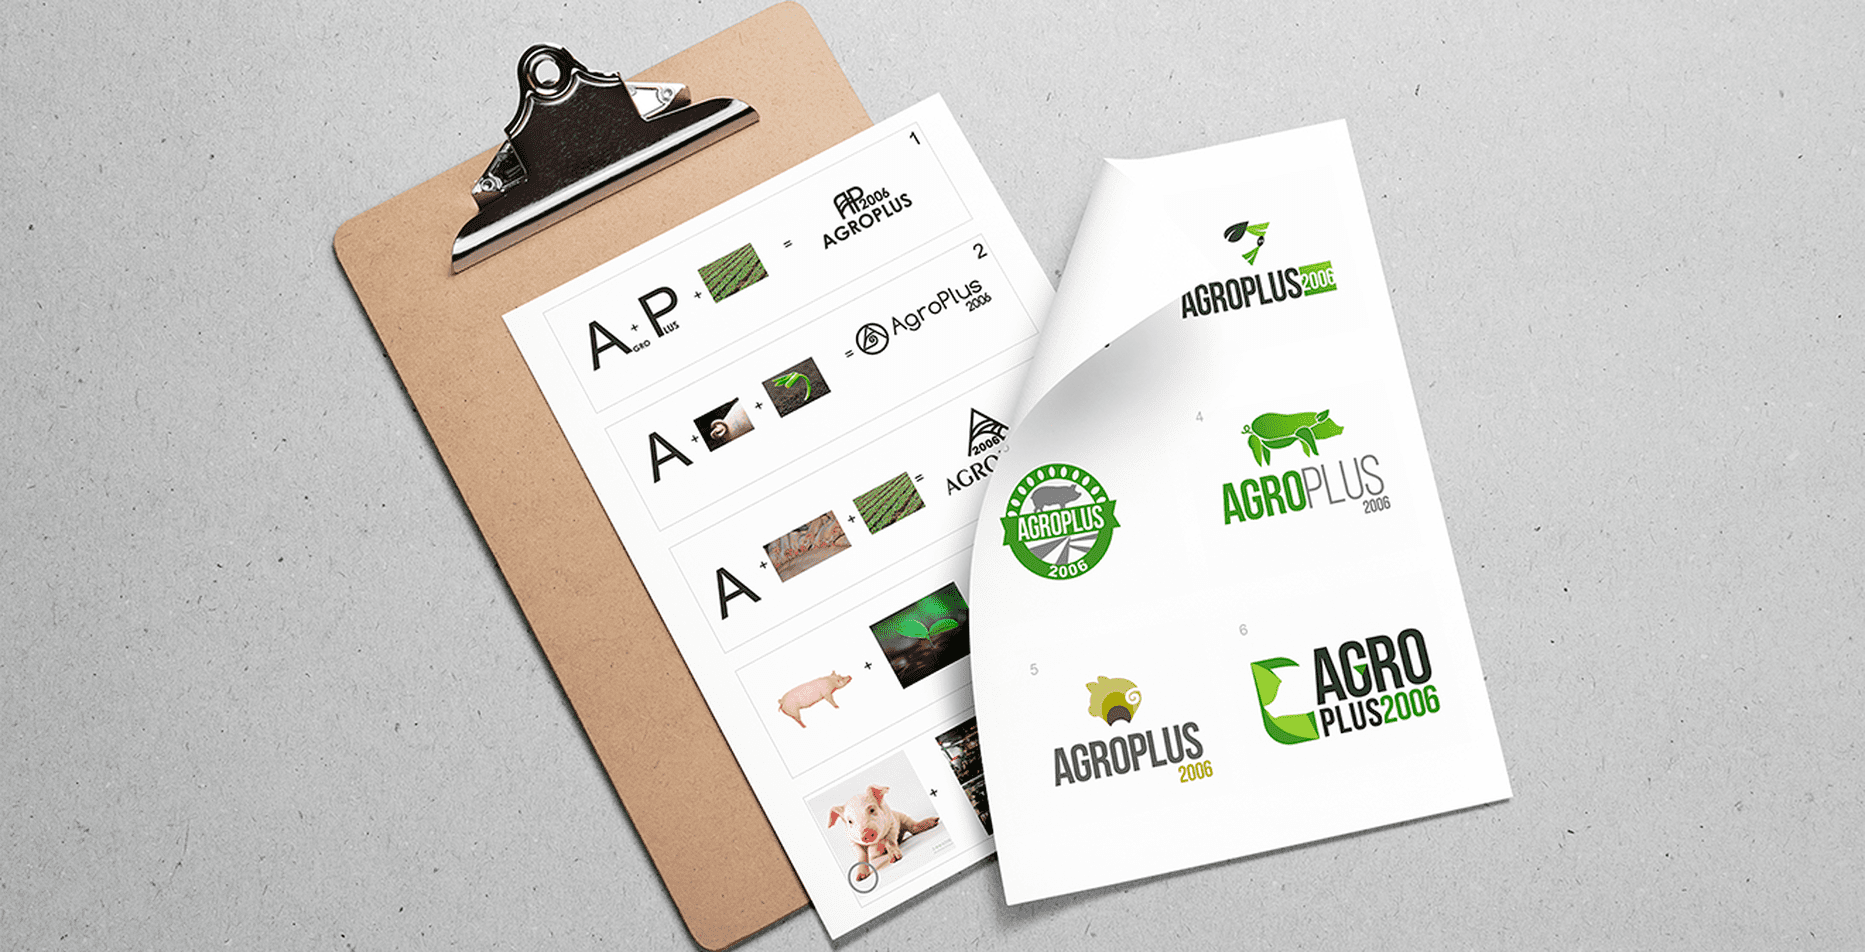 Кейс: розробка логотипу, лендінгу та брендінг для Агроплюс 2006 — Rubarb - Зображення - 2